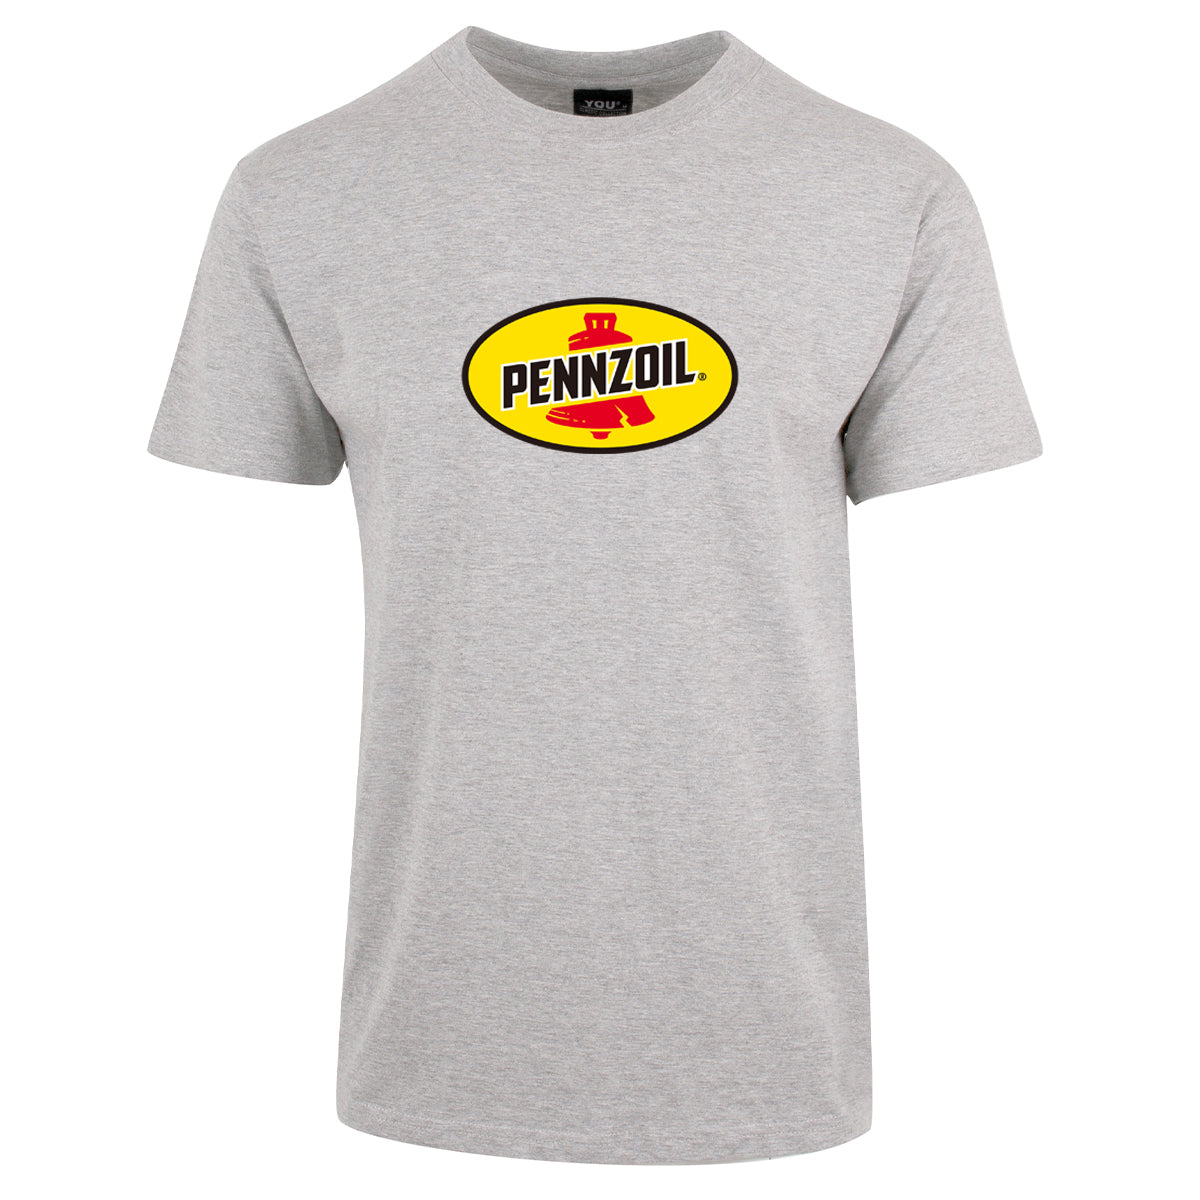 Pennzoil - t-skjorte